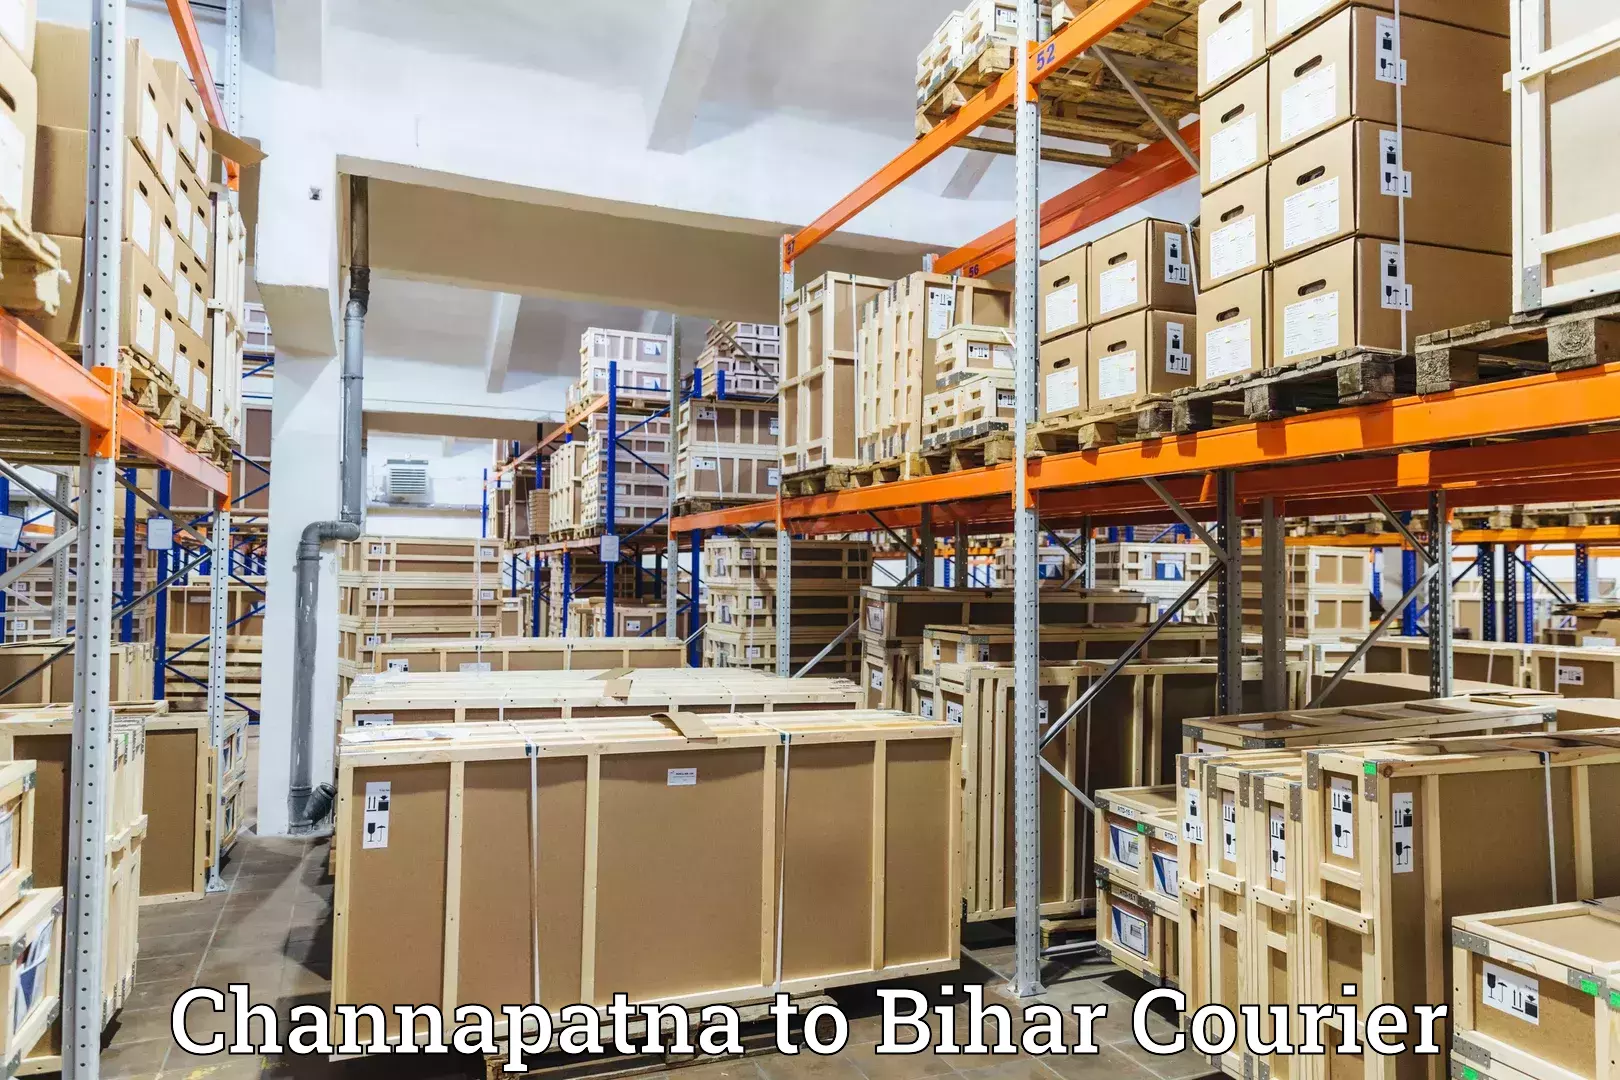 Courier service partnerships Channapatna to Vaishali